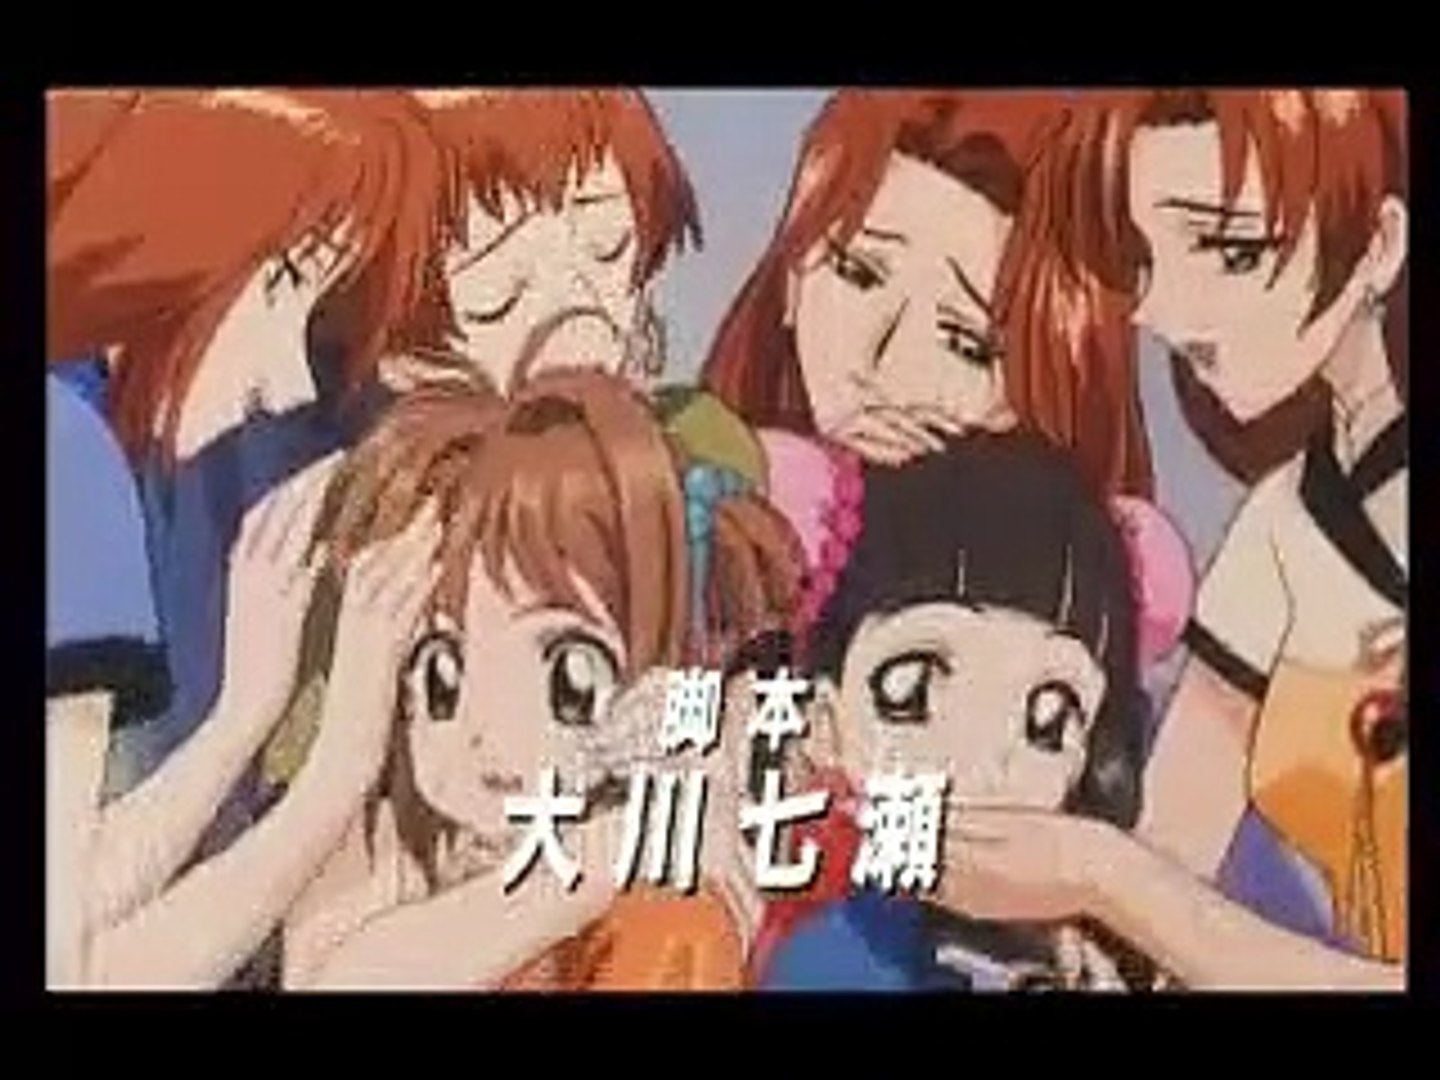 Watch Cardcaptor Sakura Movie 1 (1999) - video Dailymotion